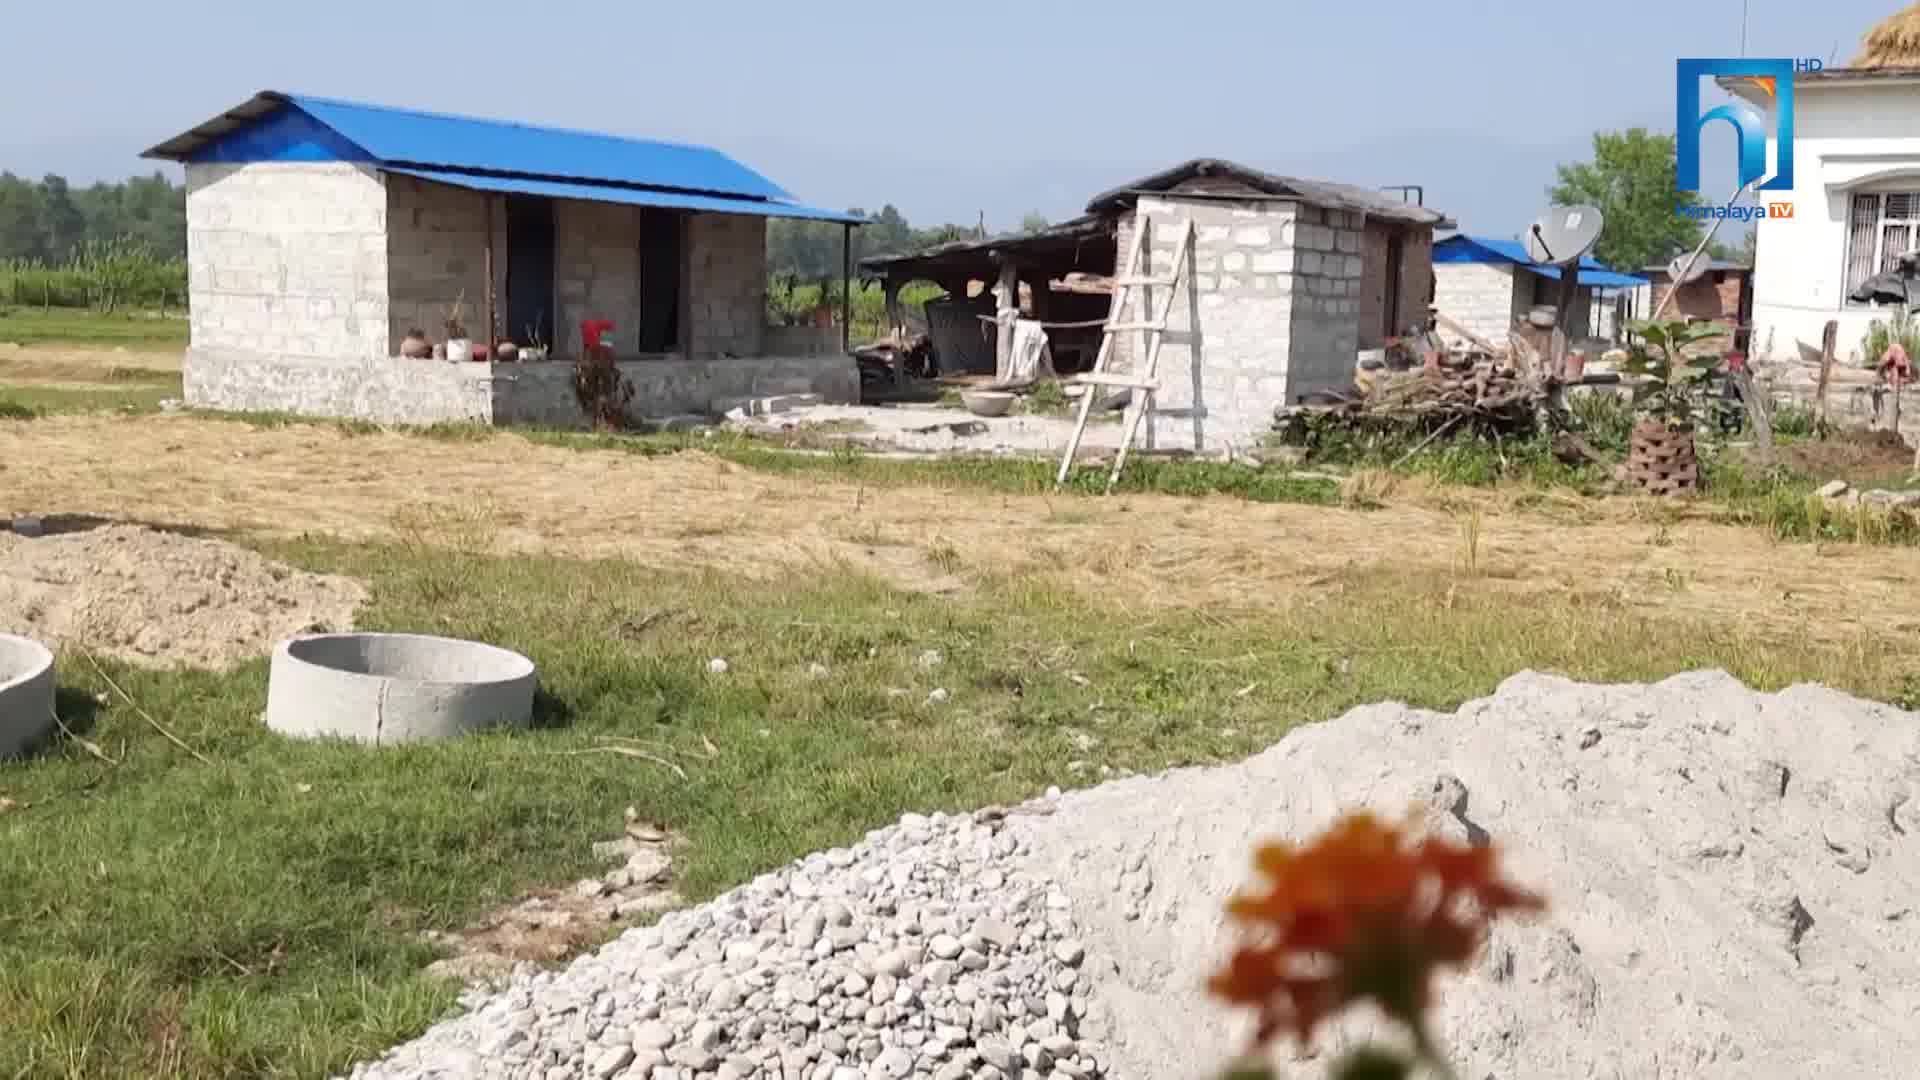 वादी समुदायले आवासका लागि पाए यस्तो पक्की घर (भिडियोसहित)